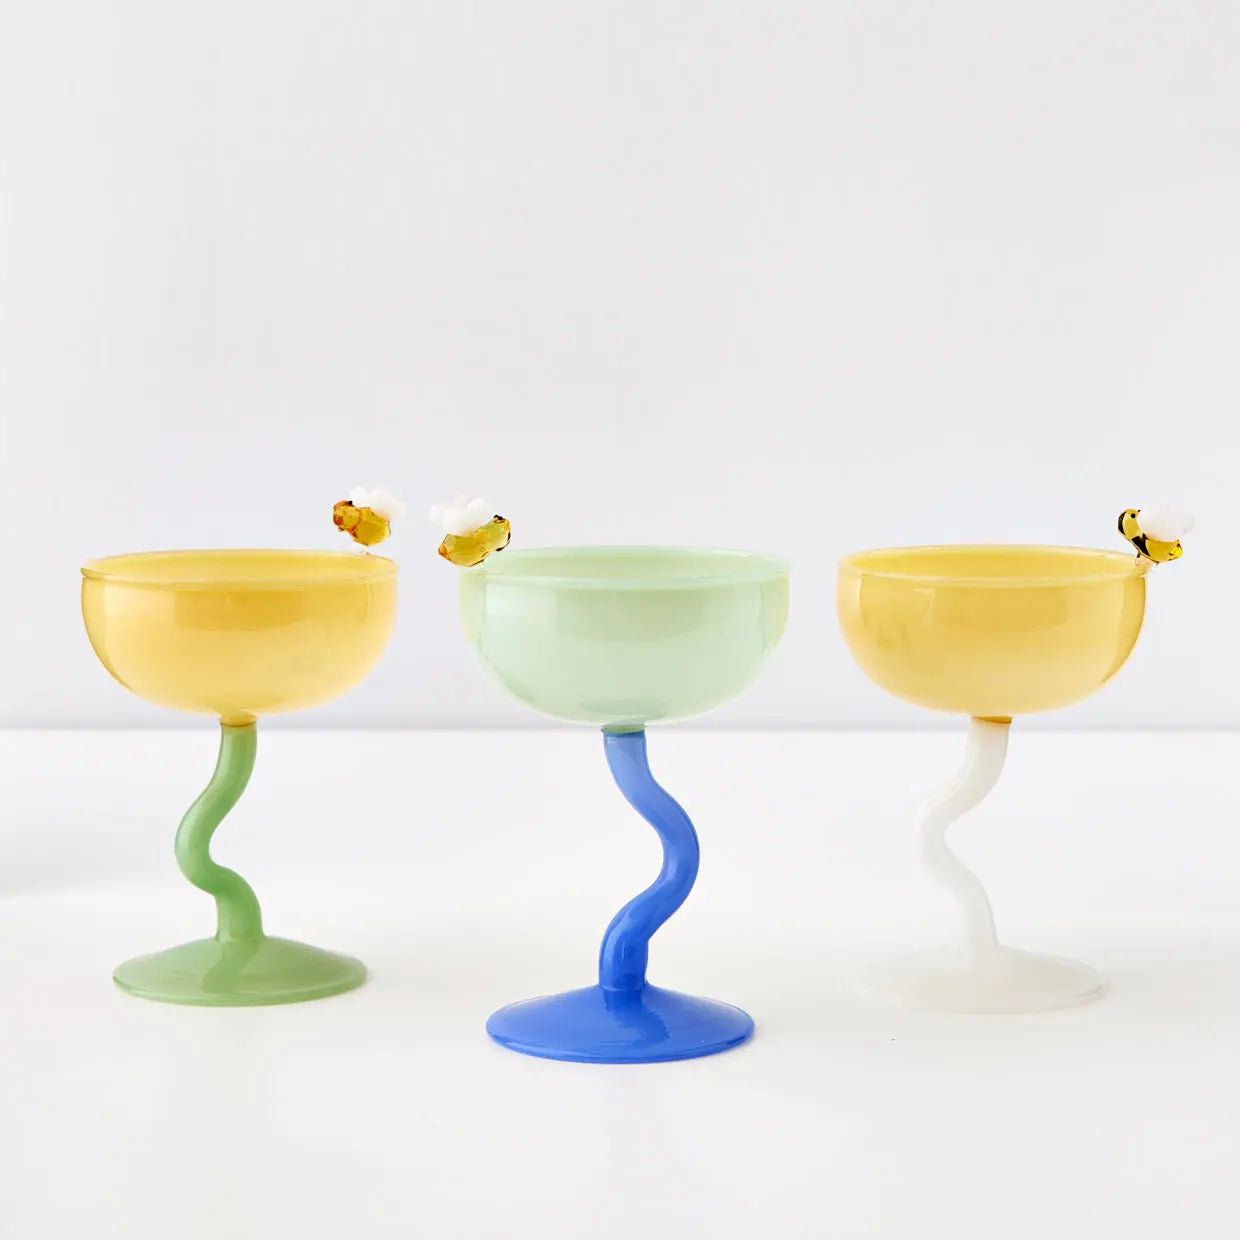 Bumble Cocktail Glass Yellow/White - GigiandTom